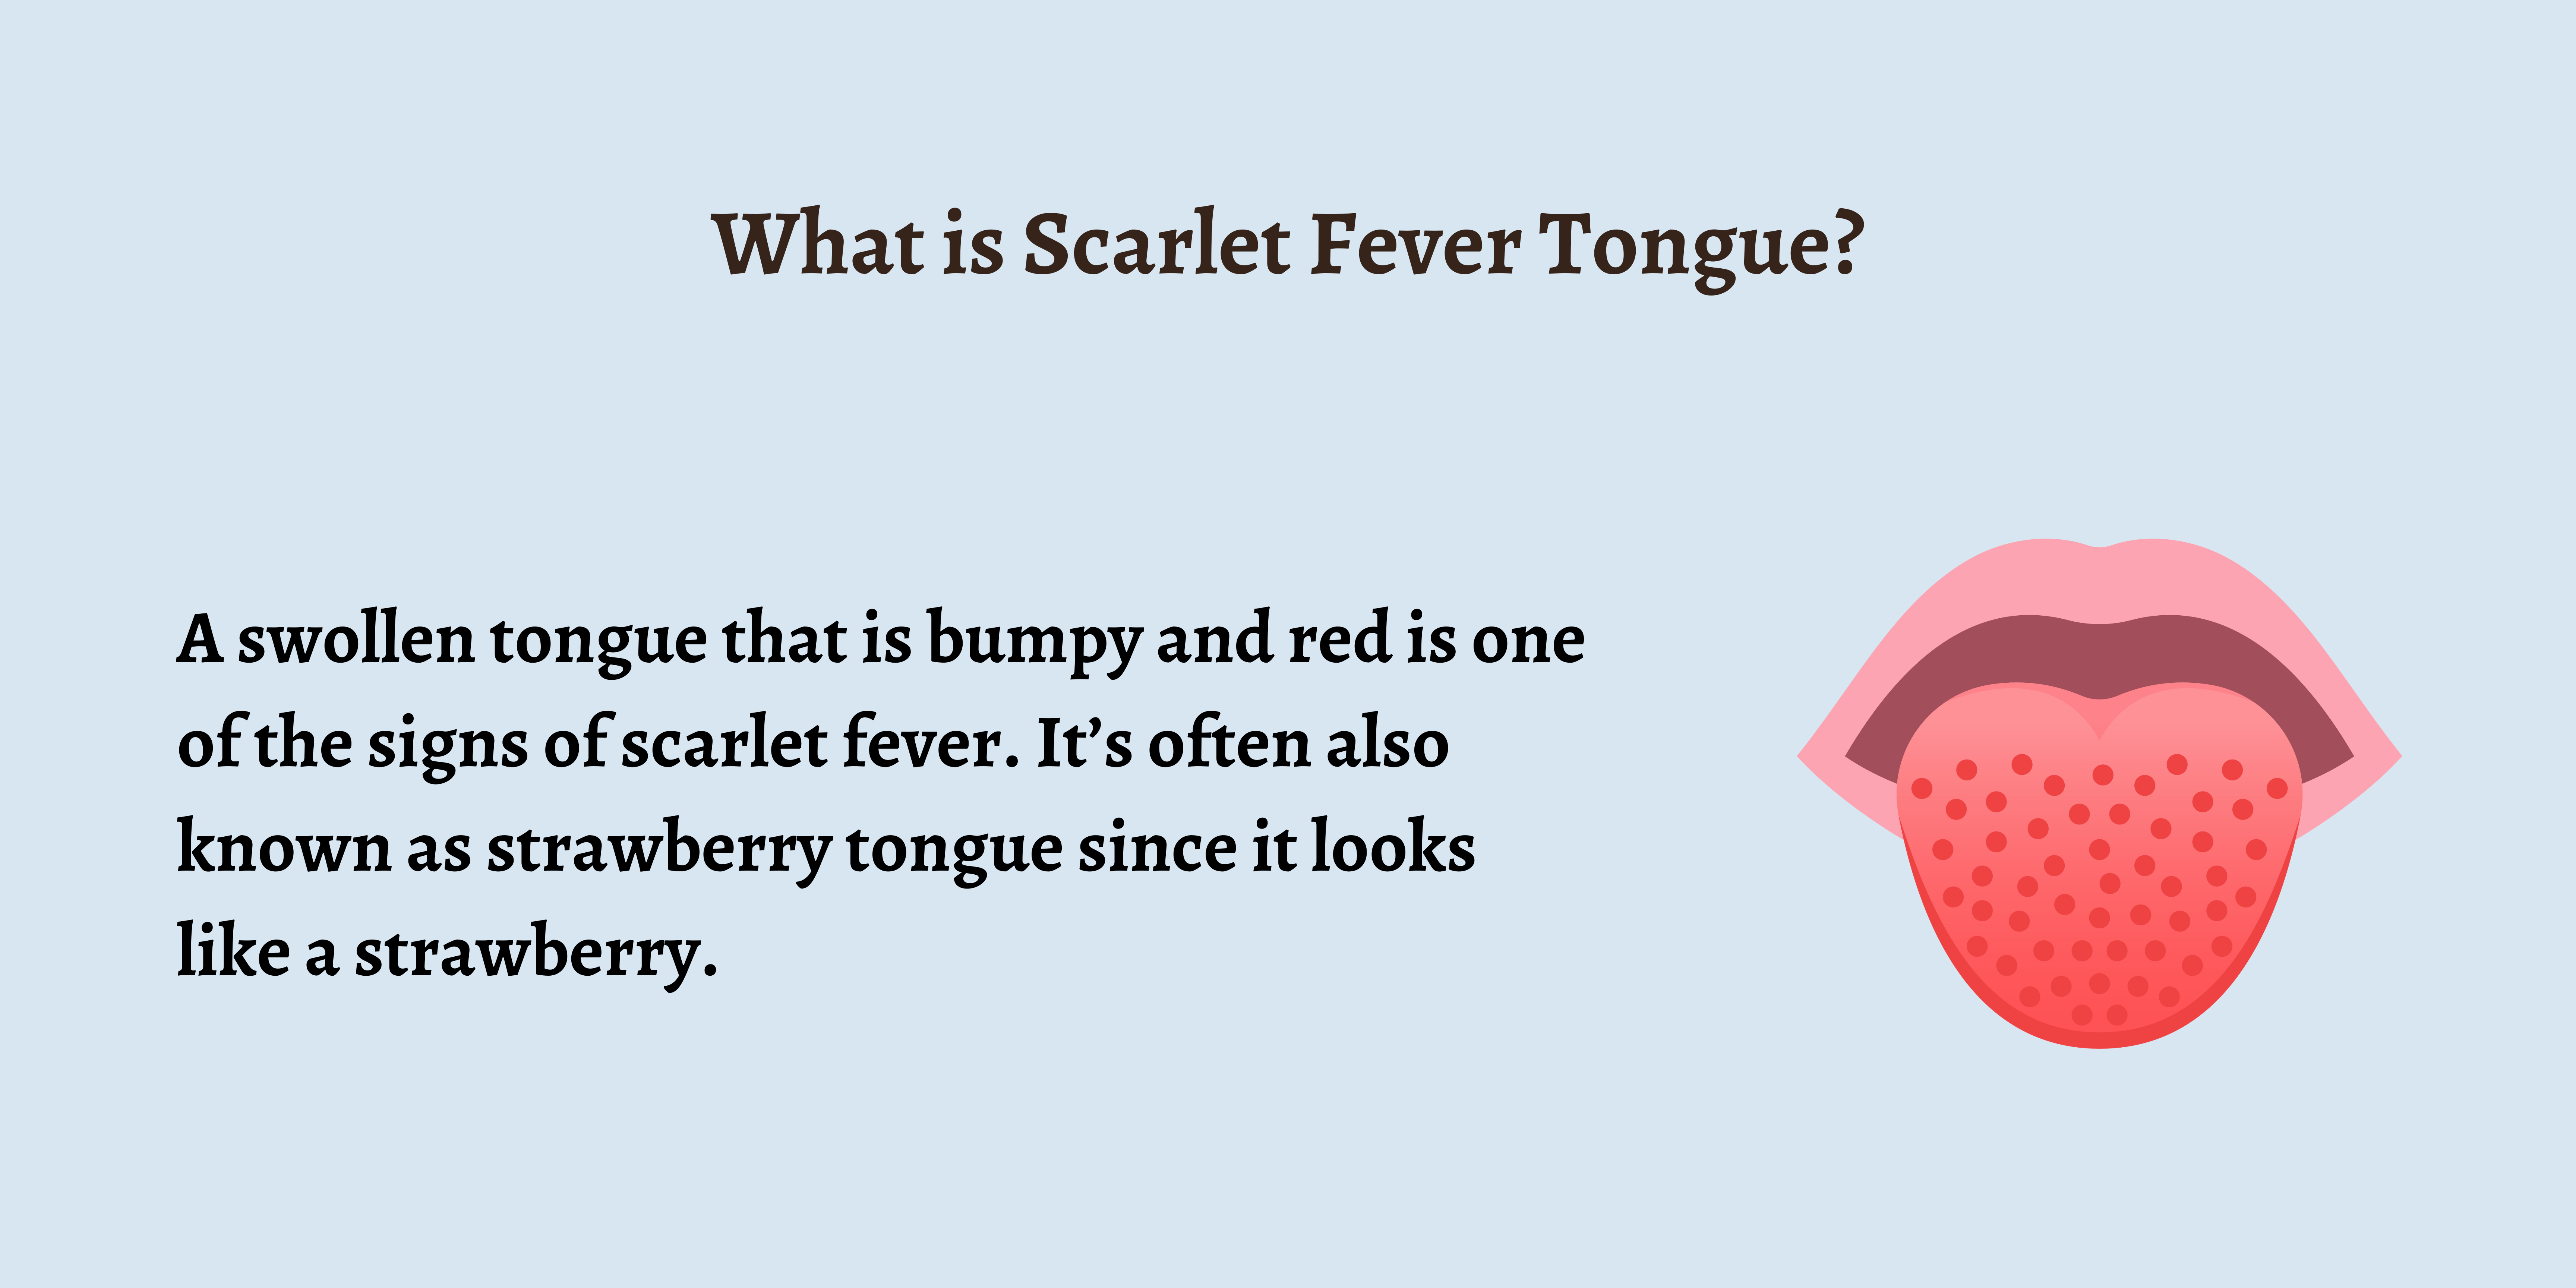 <Scarlet fever>